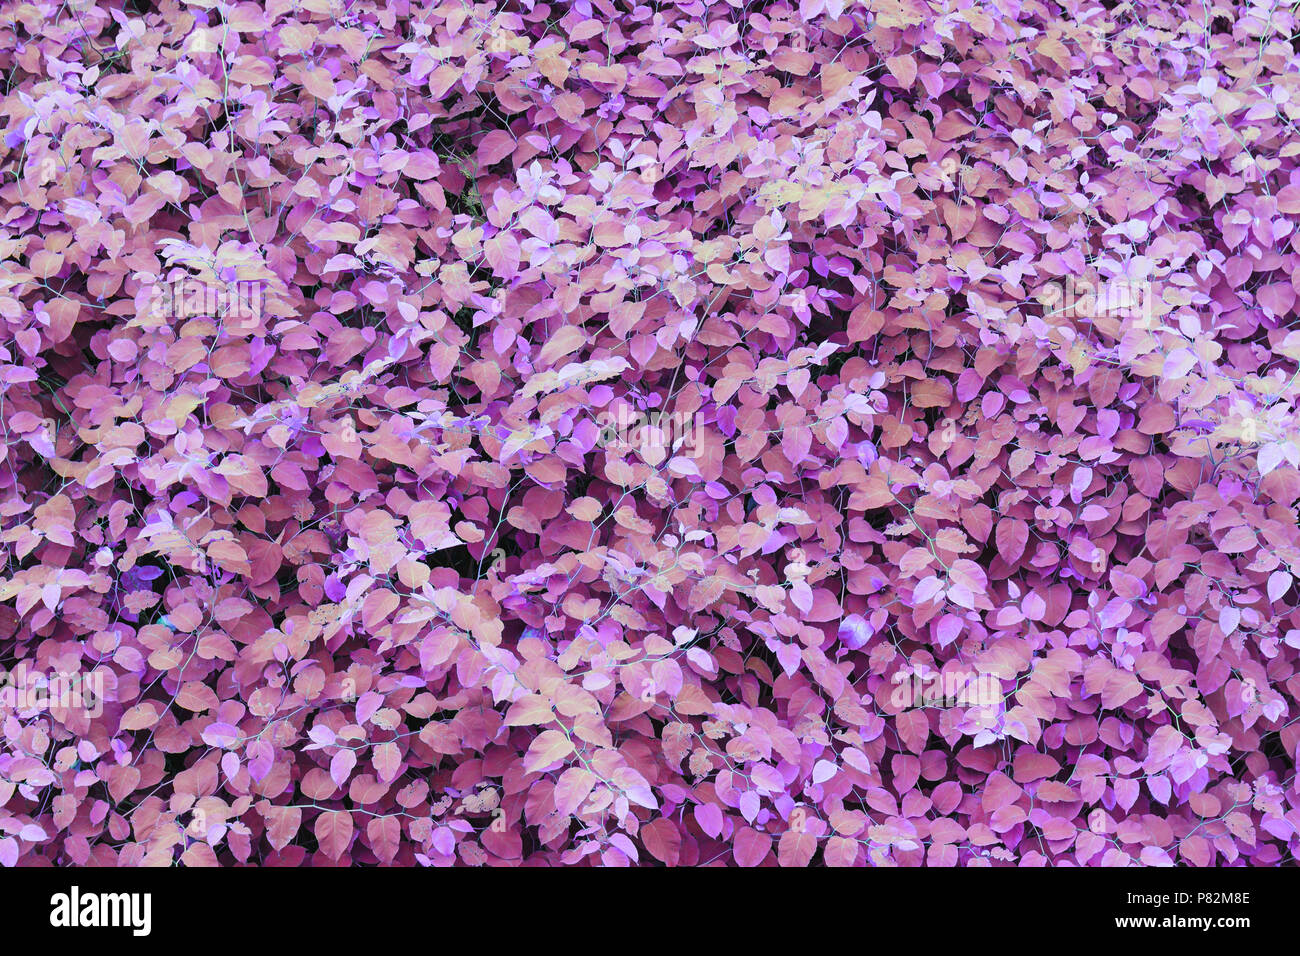 Lush foliage ultraviolet background Stock Photo